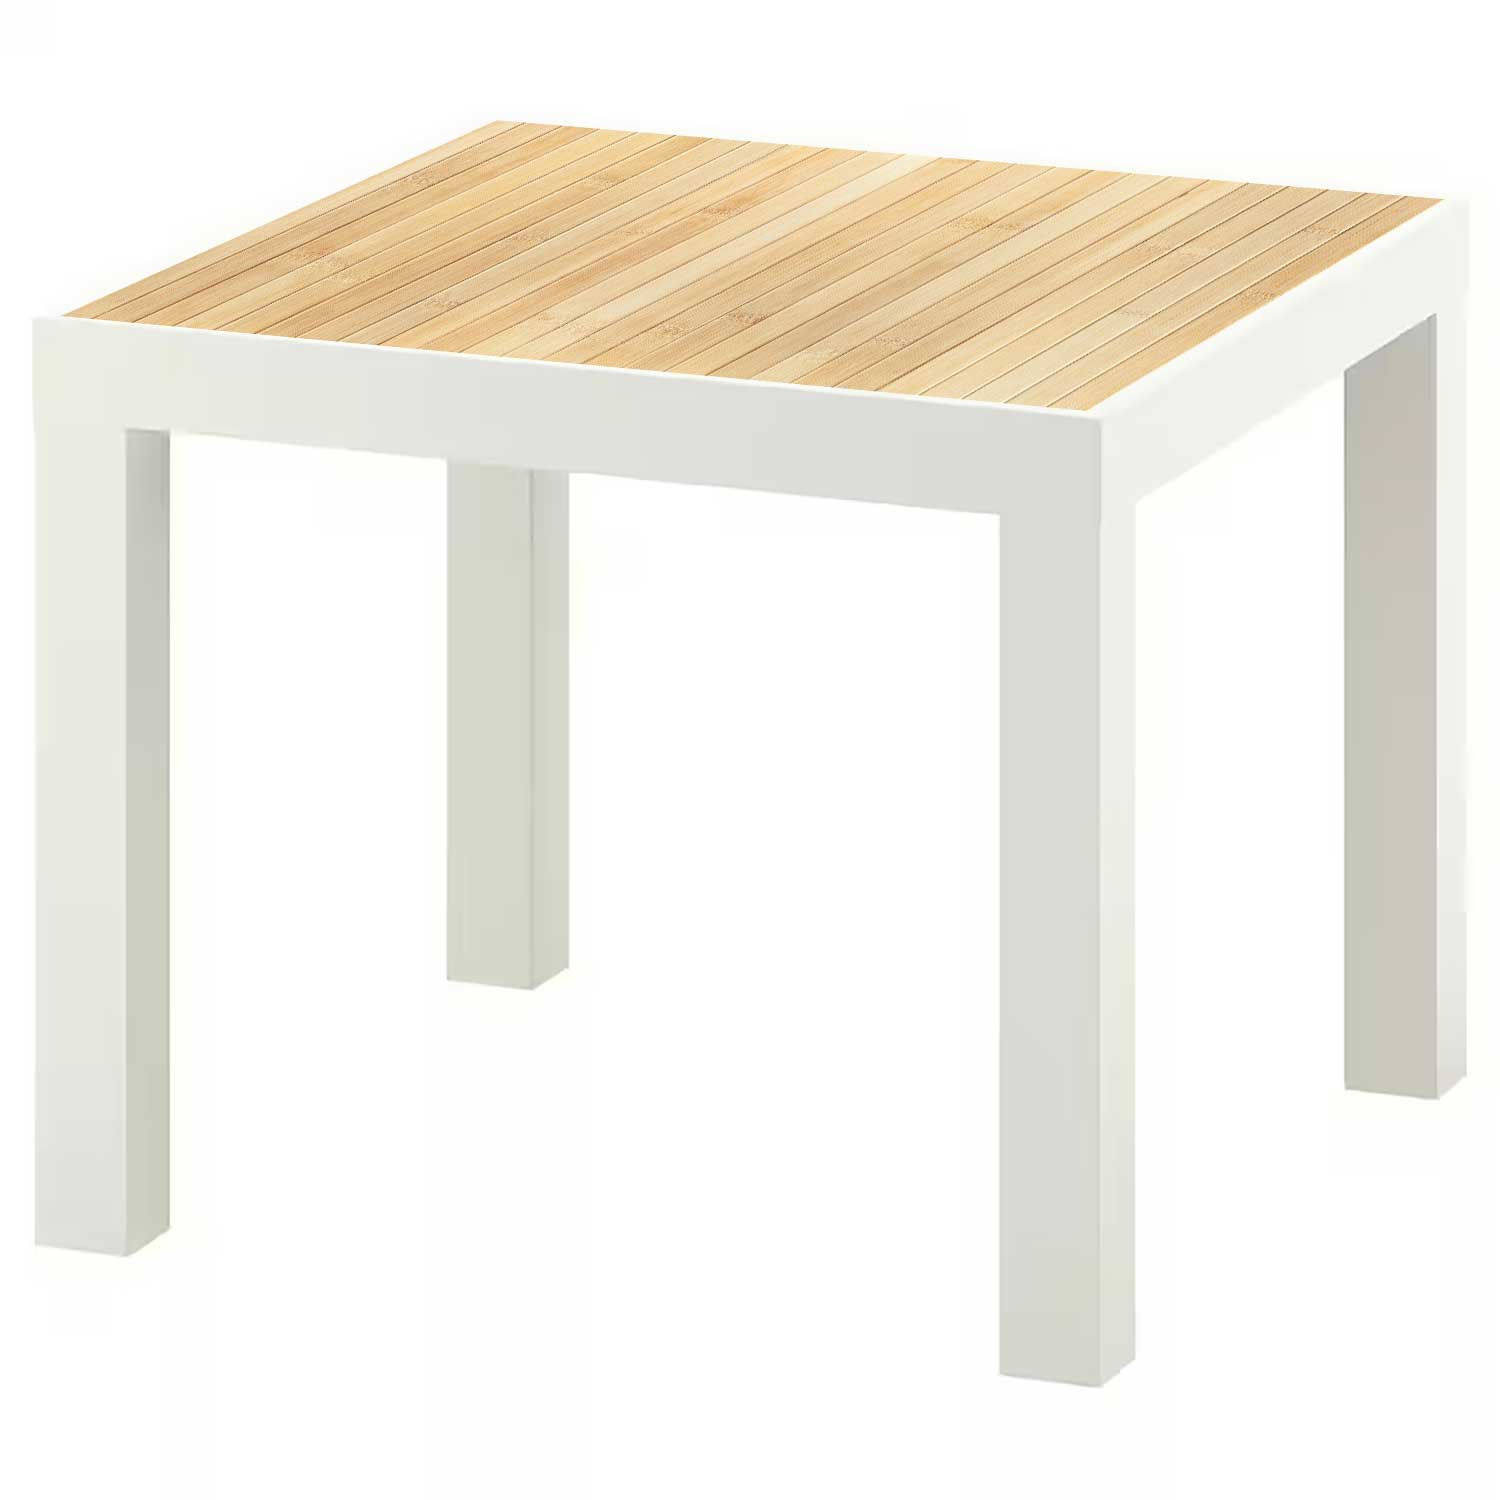 Möbelfolie für IKEA Lack Tisch 55x55 cm 'Holz Bambus'